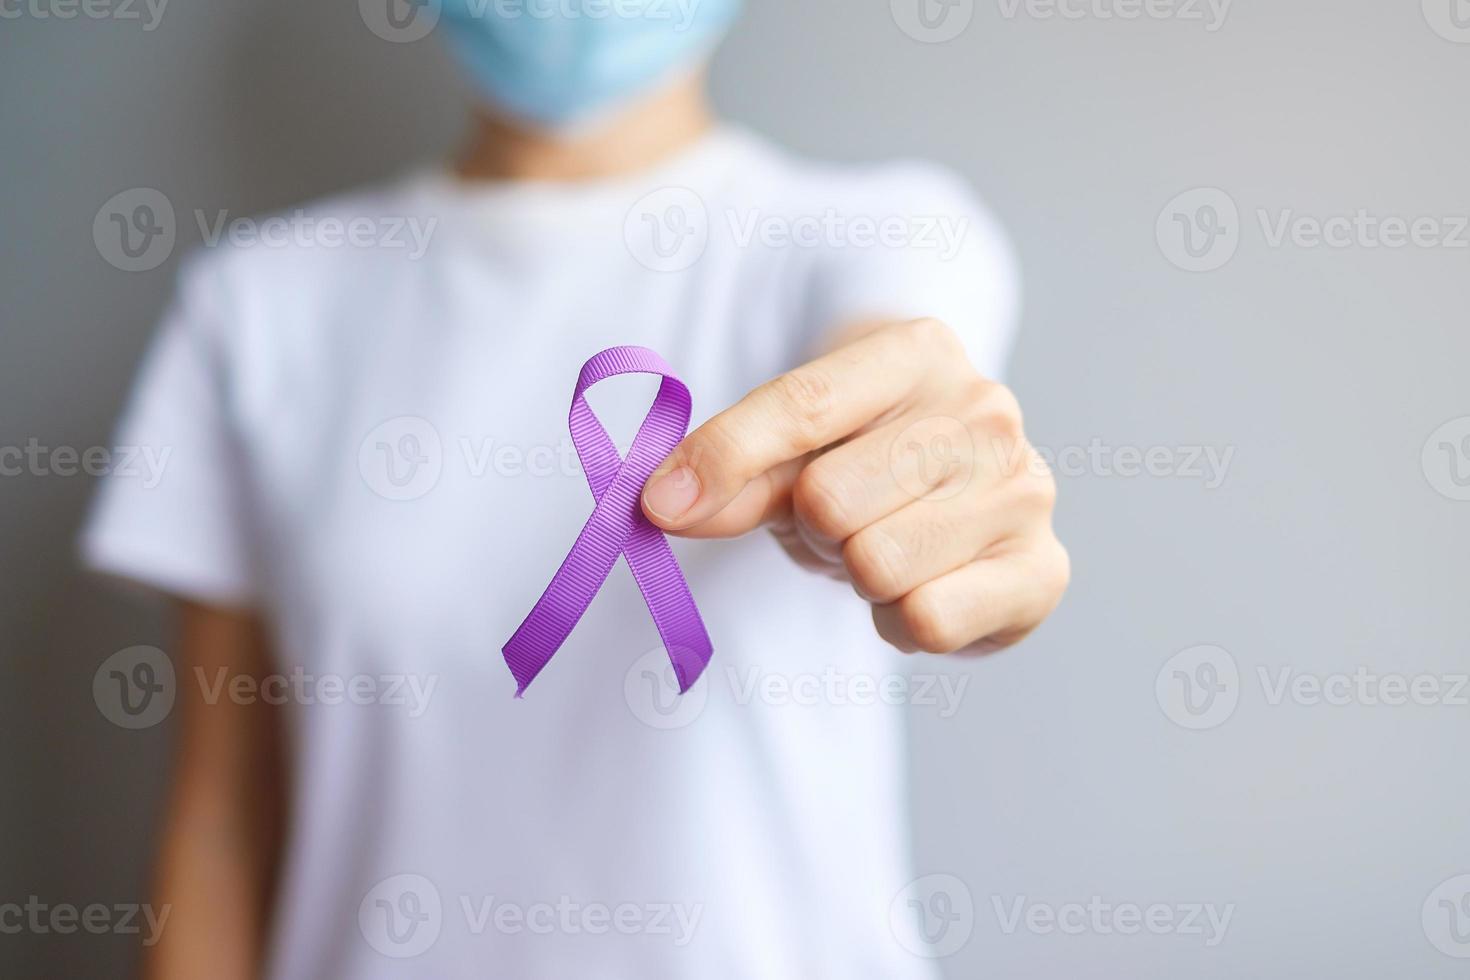 Hand, die ein lila Band für Bauchspeicheldrüsen-, Speiseröhren-, Hodenkrebs, Weltalzheimer, Epilepsie, Lupus, Sarkoidose, Fibromyalgie und Bewusstseinsmonat für häusliche Gewalt hält. weltkrebstag konzept foto